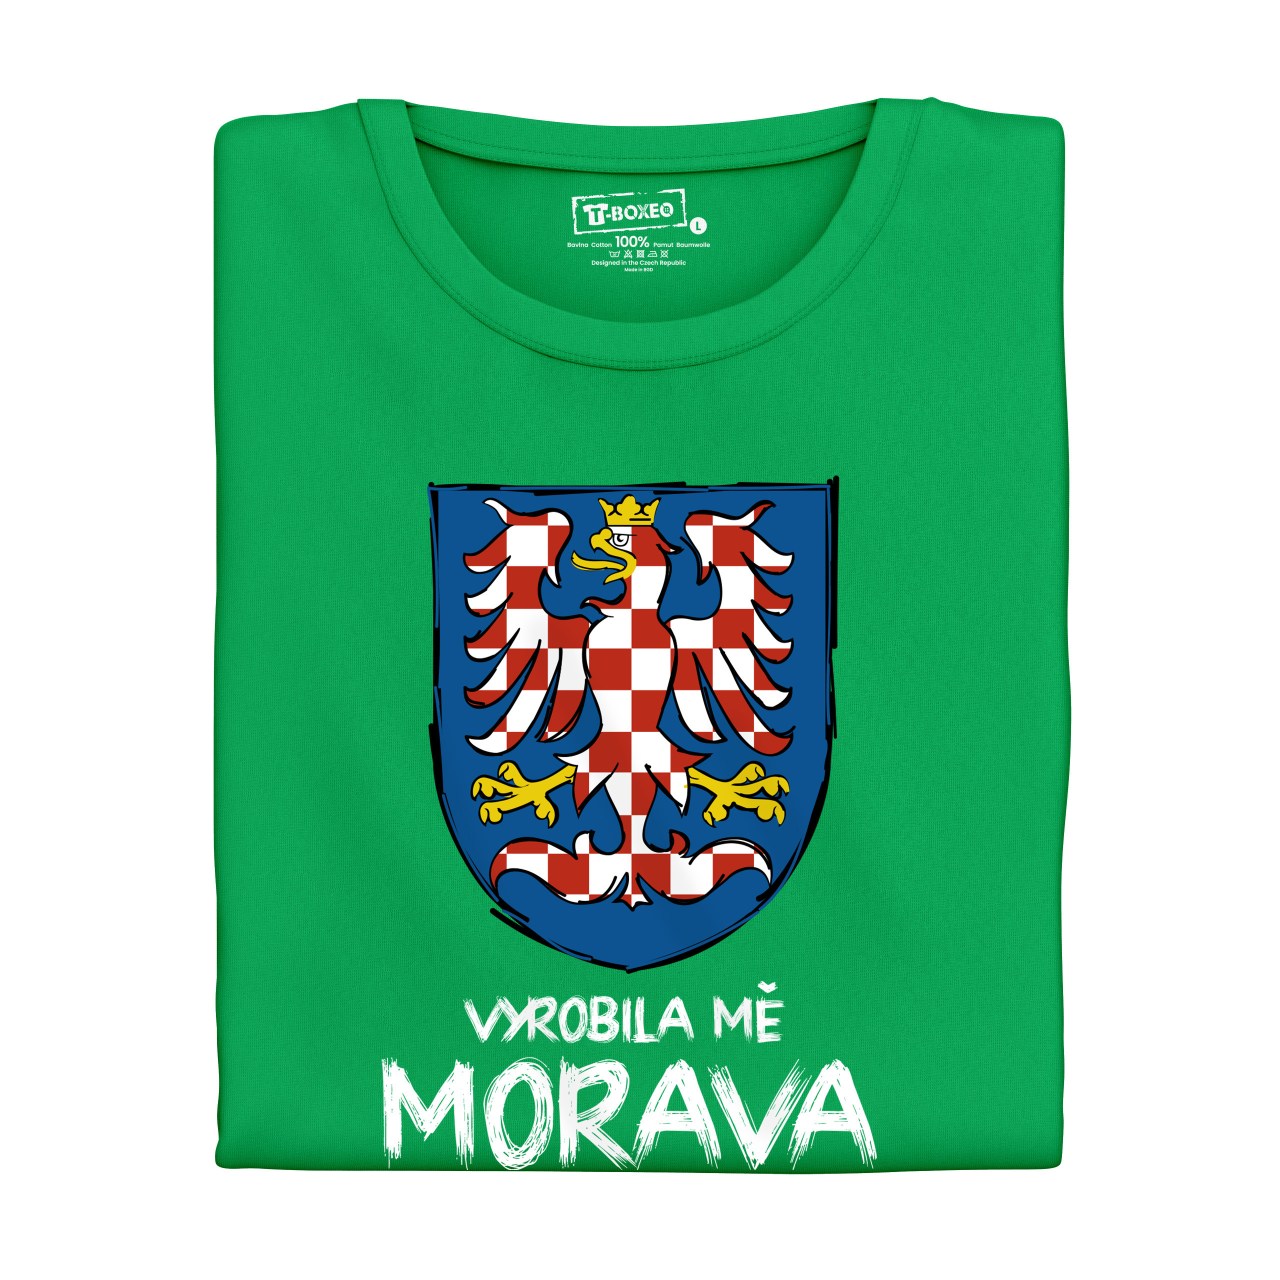 Dámské tričko s potiskem “Vyrobila mě Morava” 